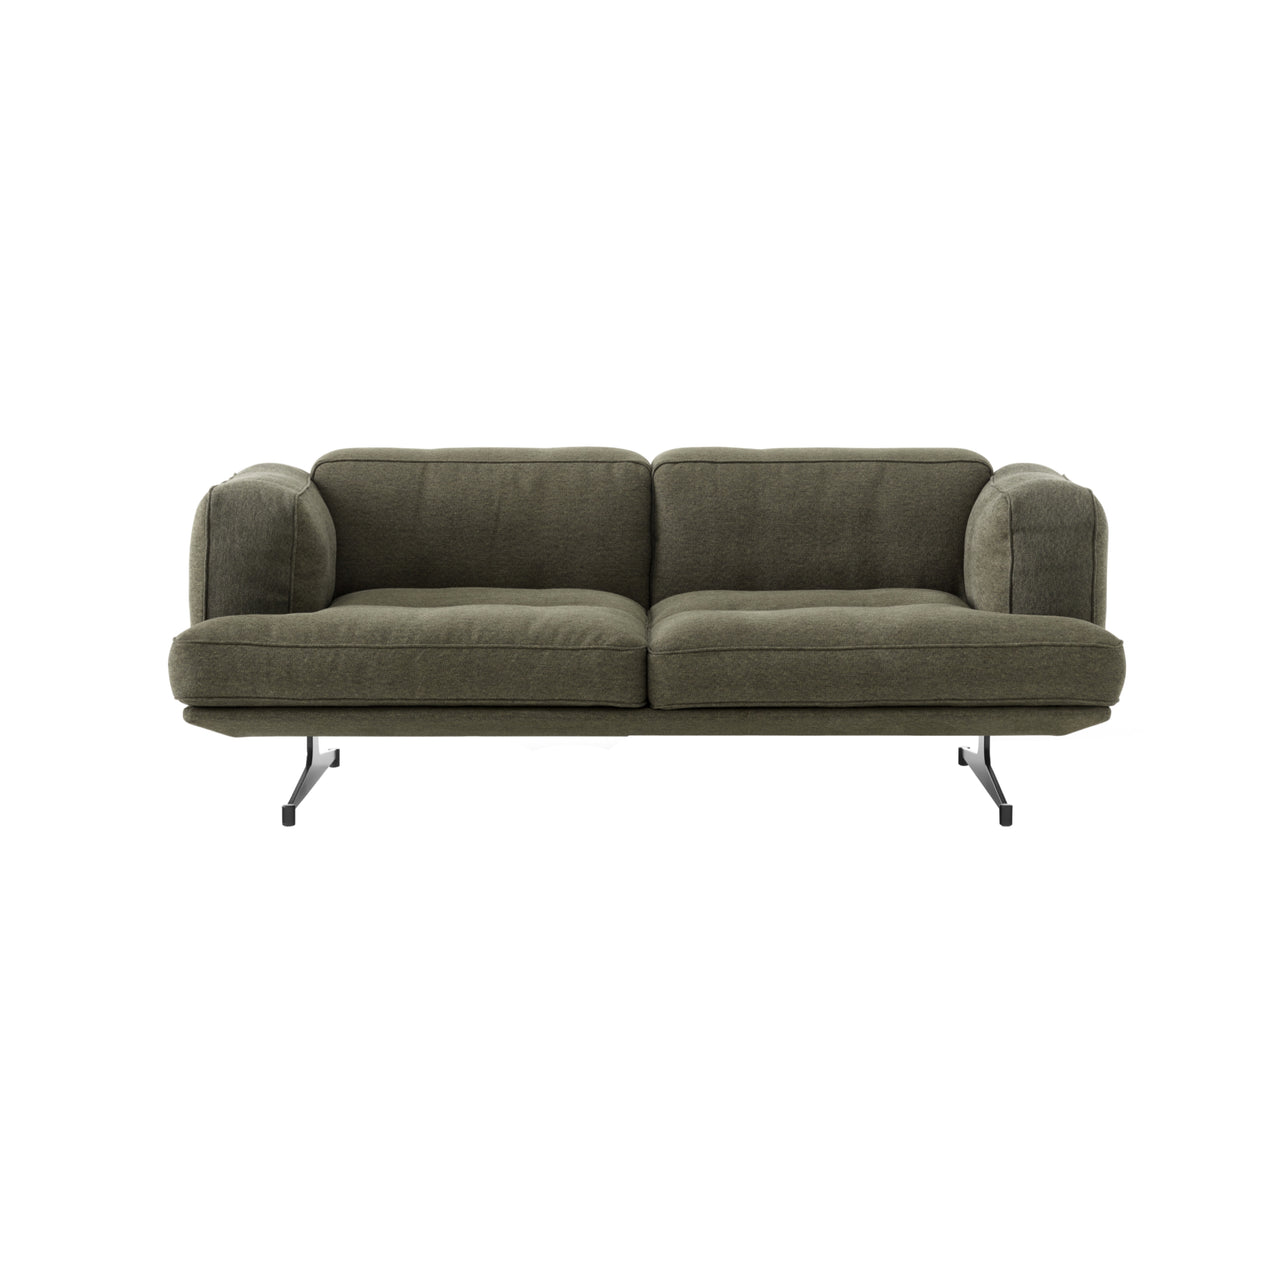 Inland Sofa: AV22 + AV23 + 2 Seater + Clay 0014 